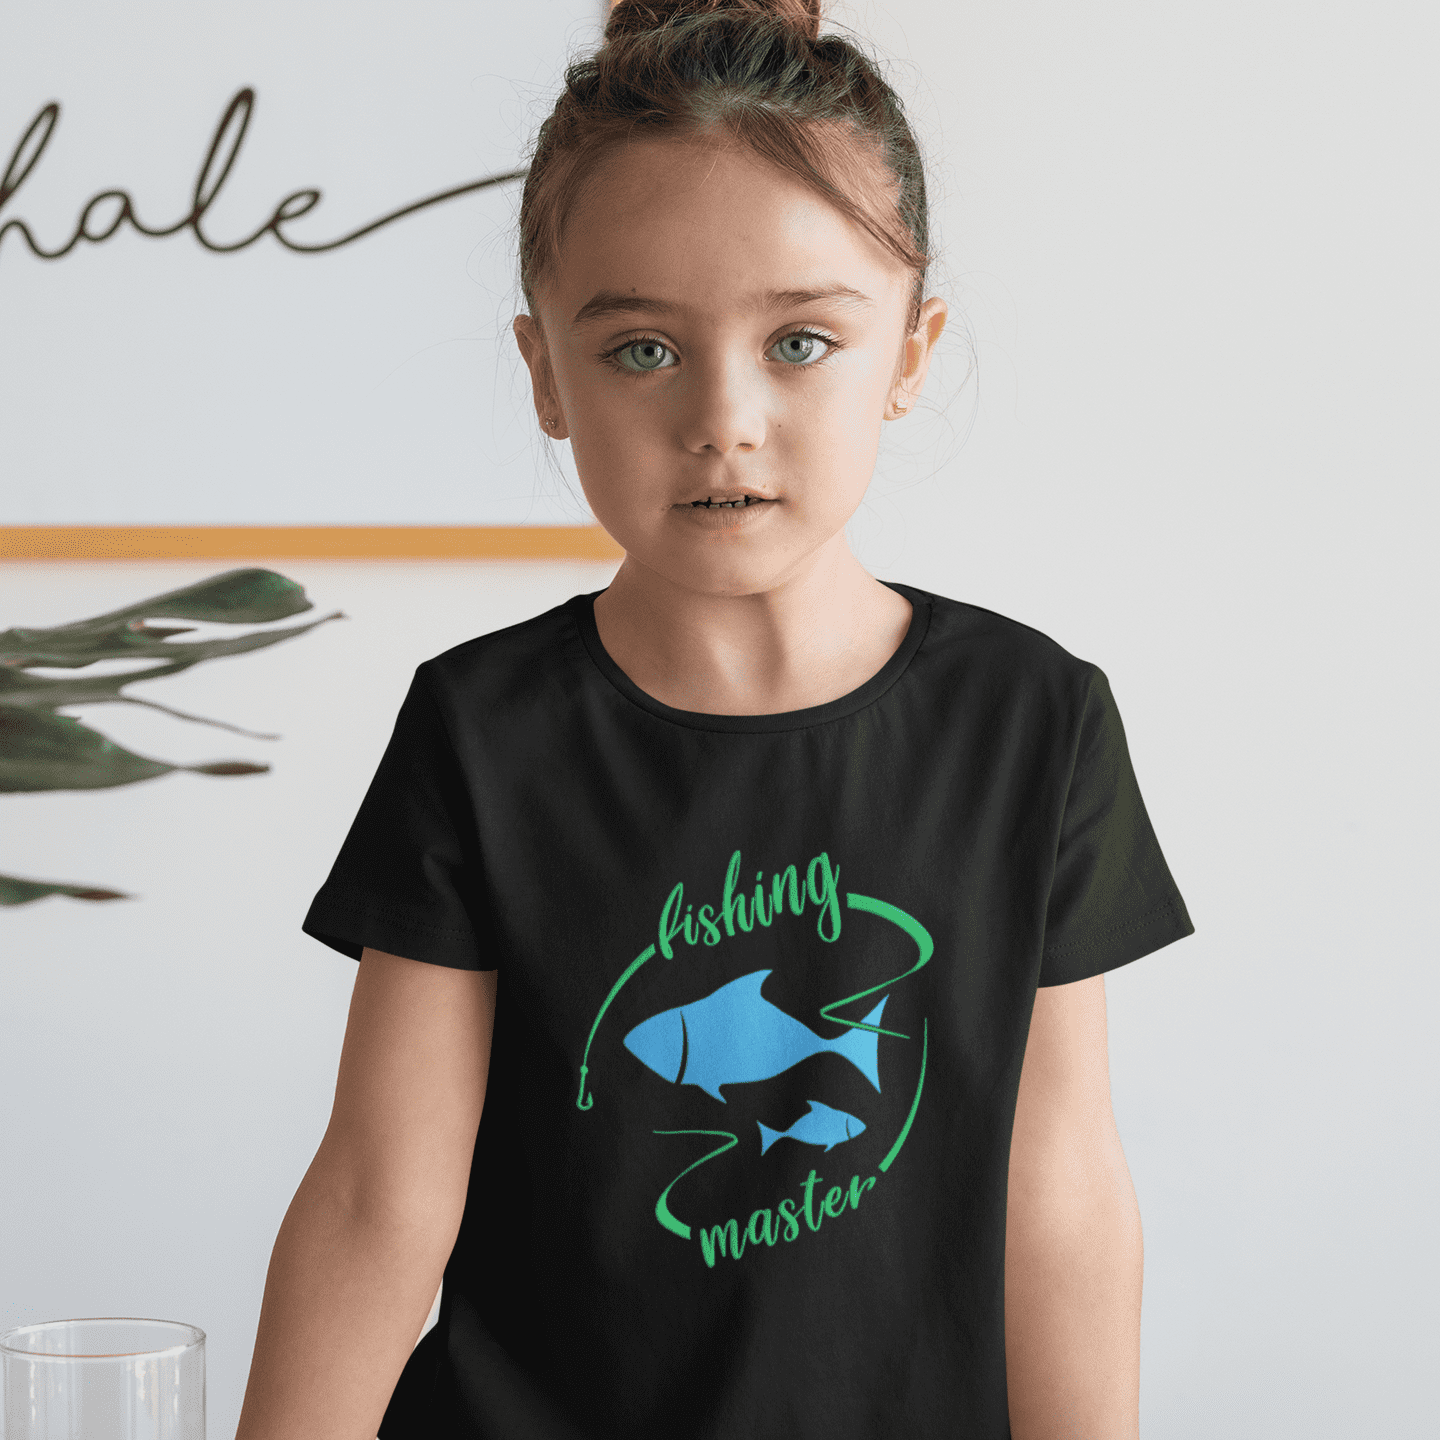 Fishing Shirts for Girls - Kids Fishing Shirts - Fishing Gift Shirt